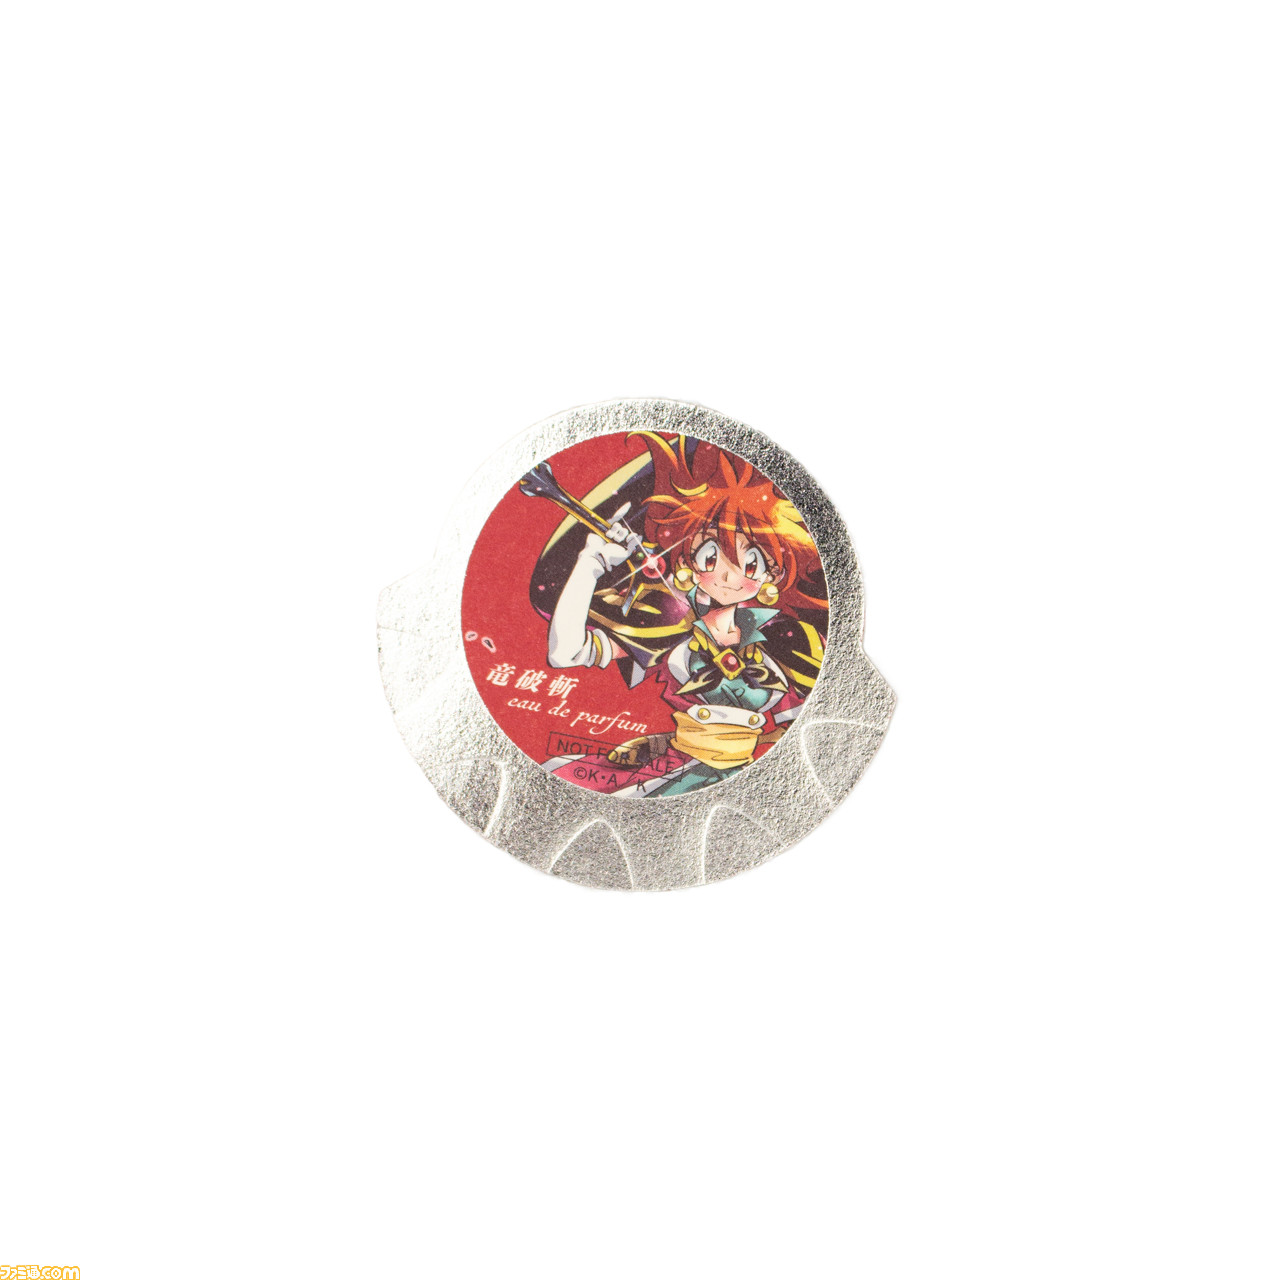 スレイヤーズ の呪文 ドラグ スレイブ をイメージした香水 ドラグ スレイブ オードパルファム が発売 ファミ通 Com